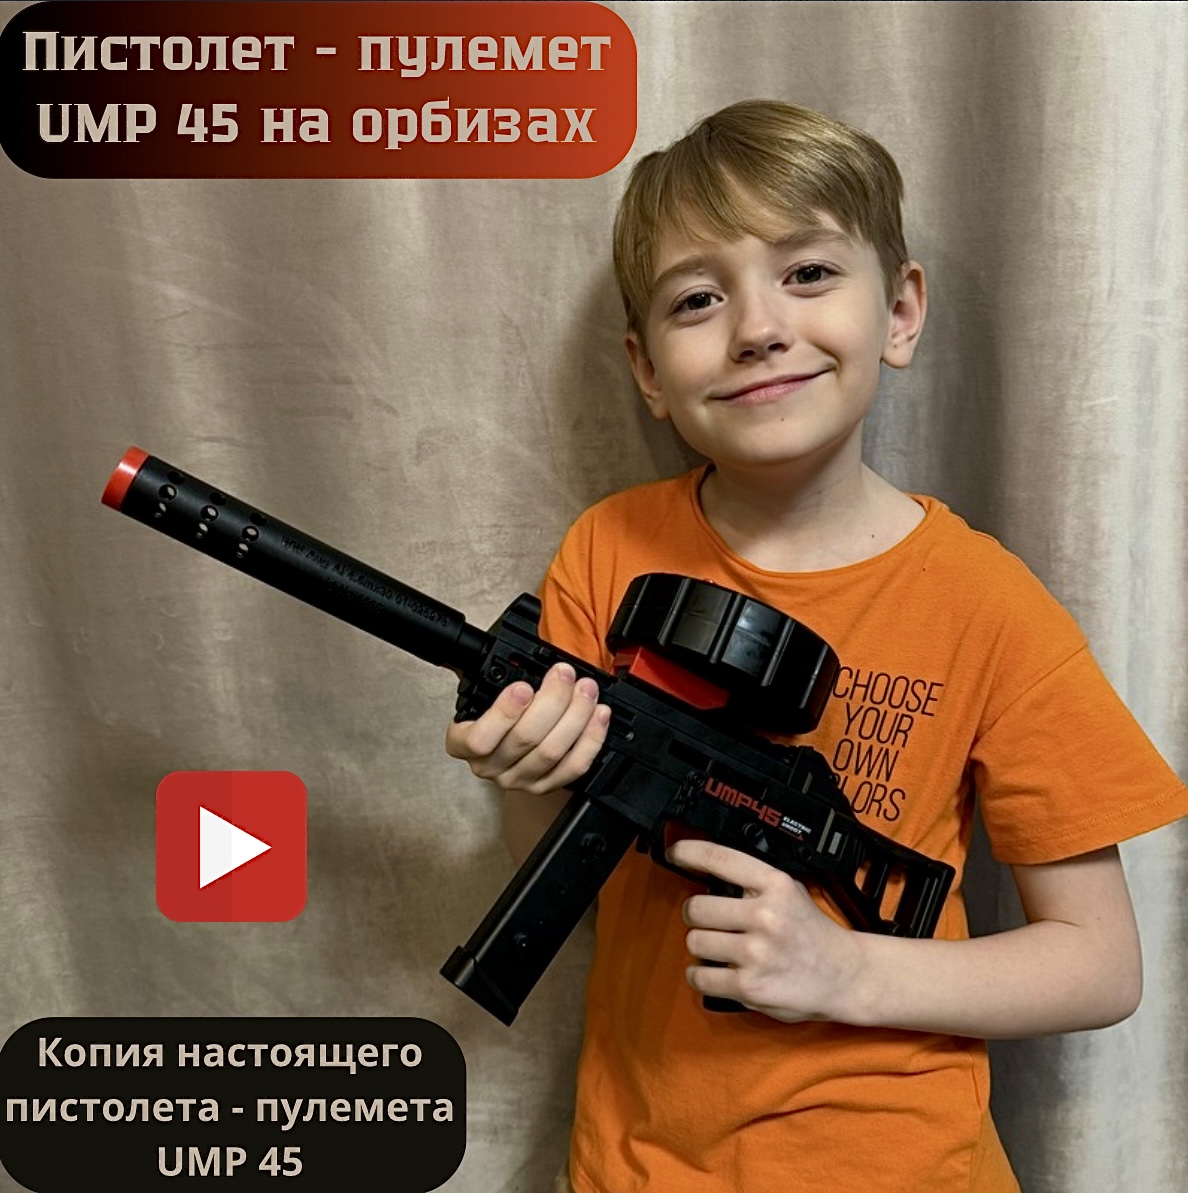 Пистолет-пулемет игровой RanCap UMP 45 с орбизами (игрушка) пистолет с орбизами cozy house